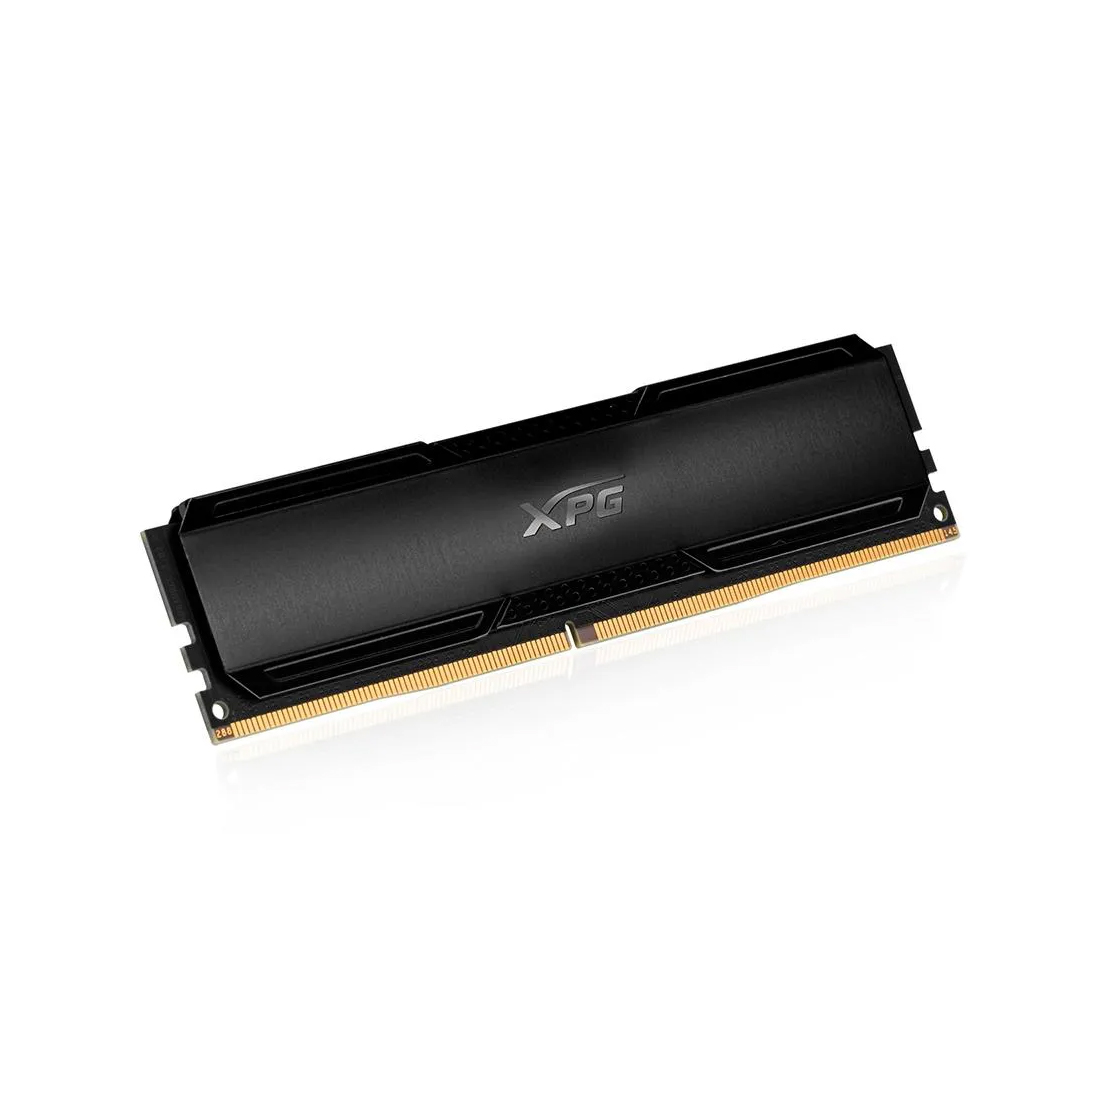 Модуль памяти ADATA XPG GAMMIX D20 AX4U32008G16A-CBK20 DDR4 8GB